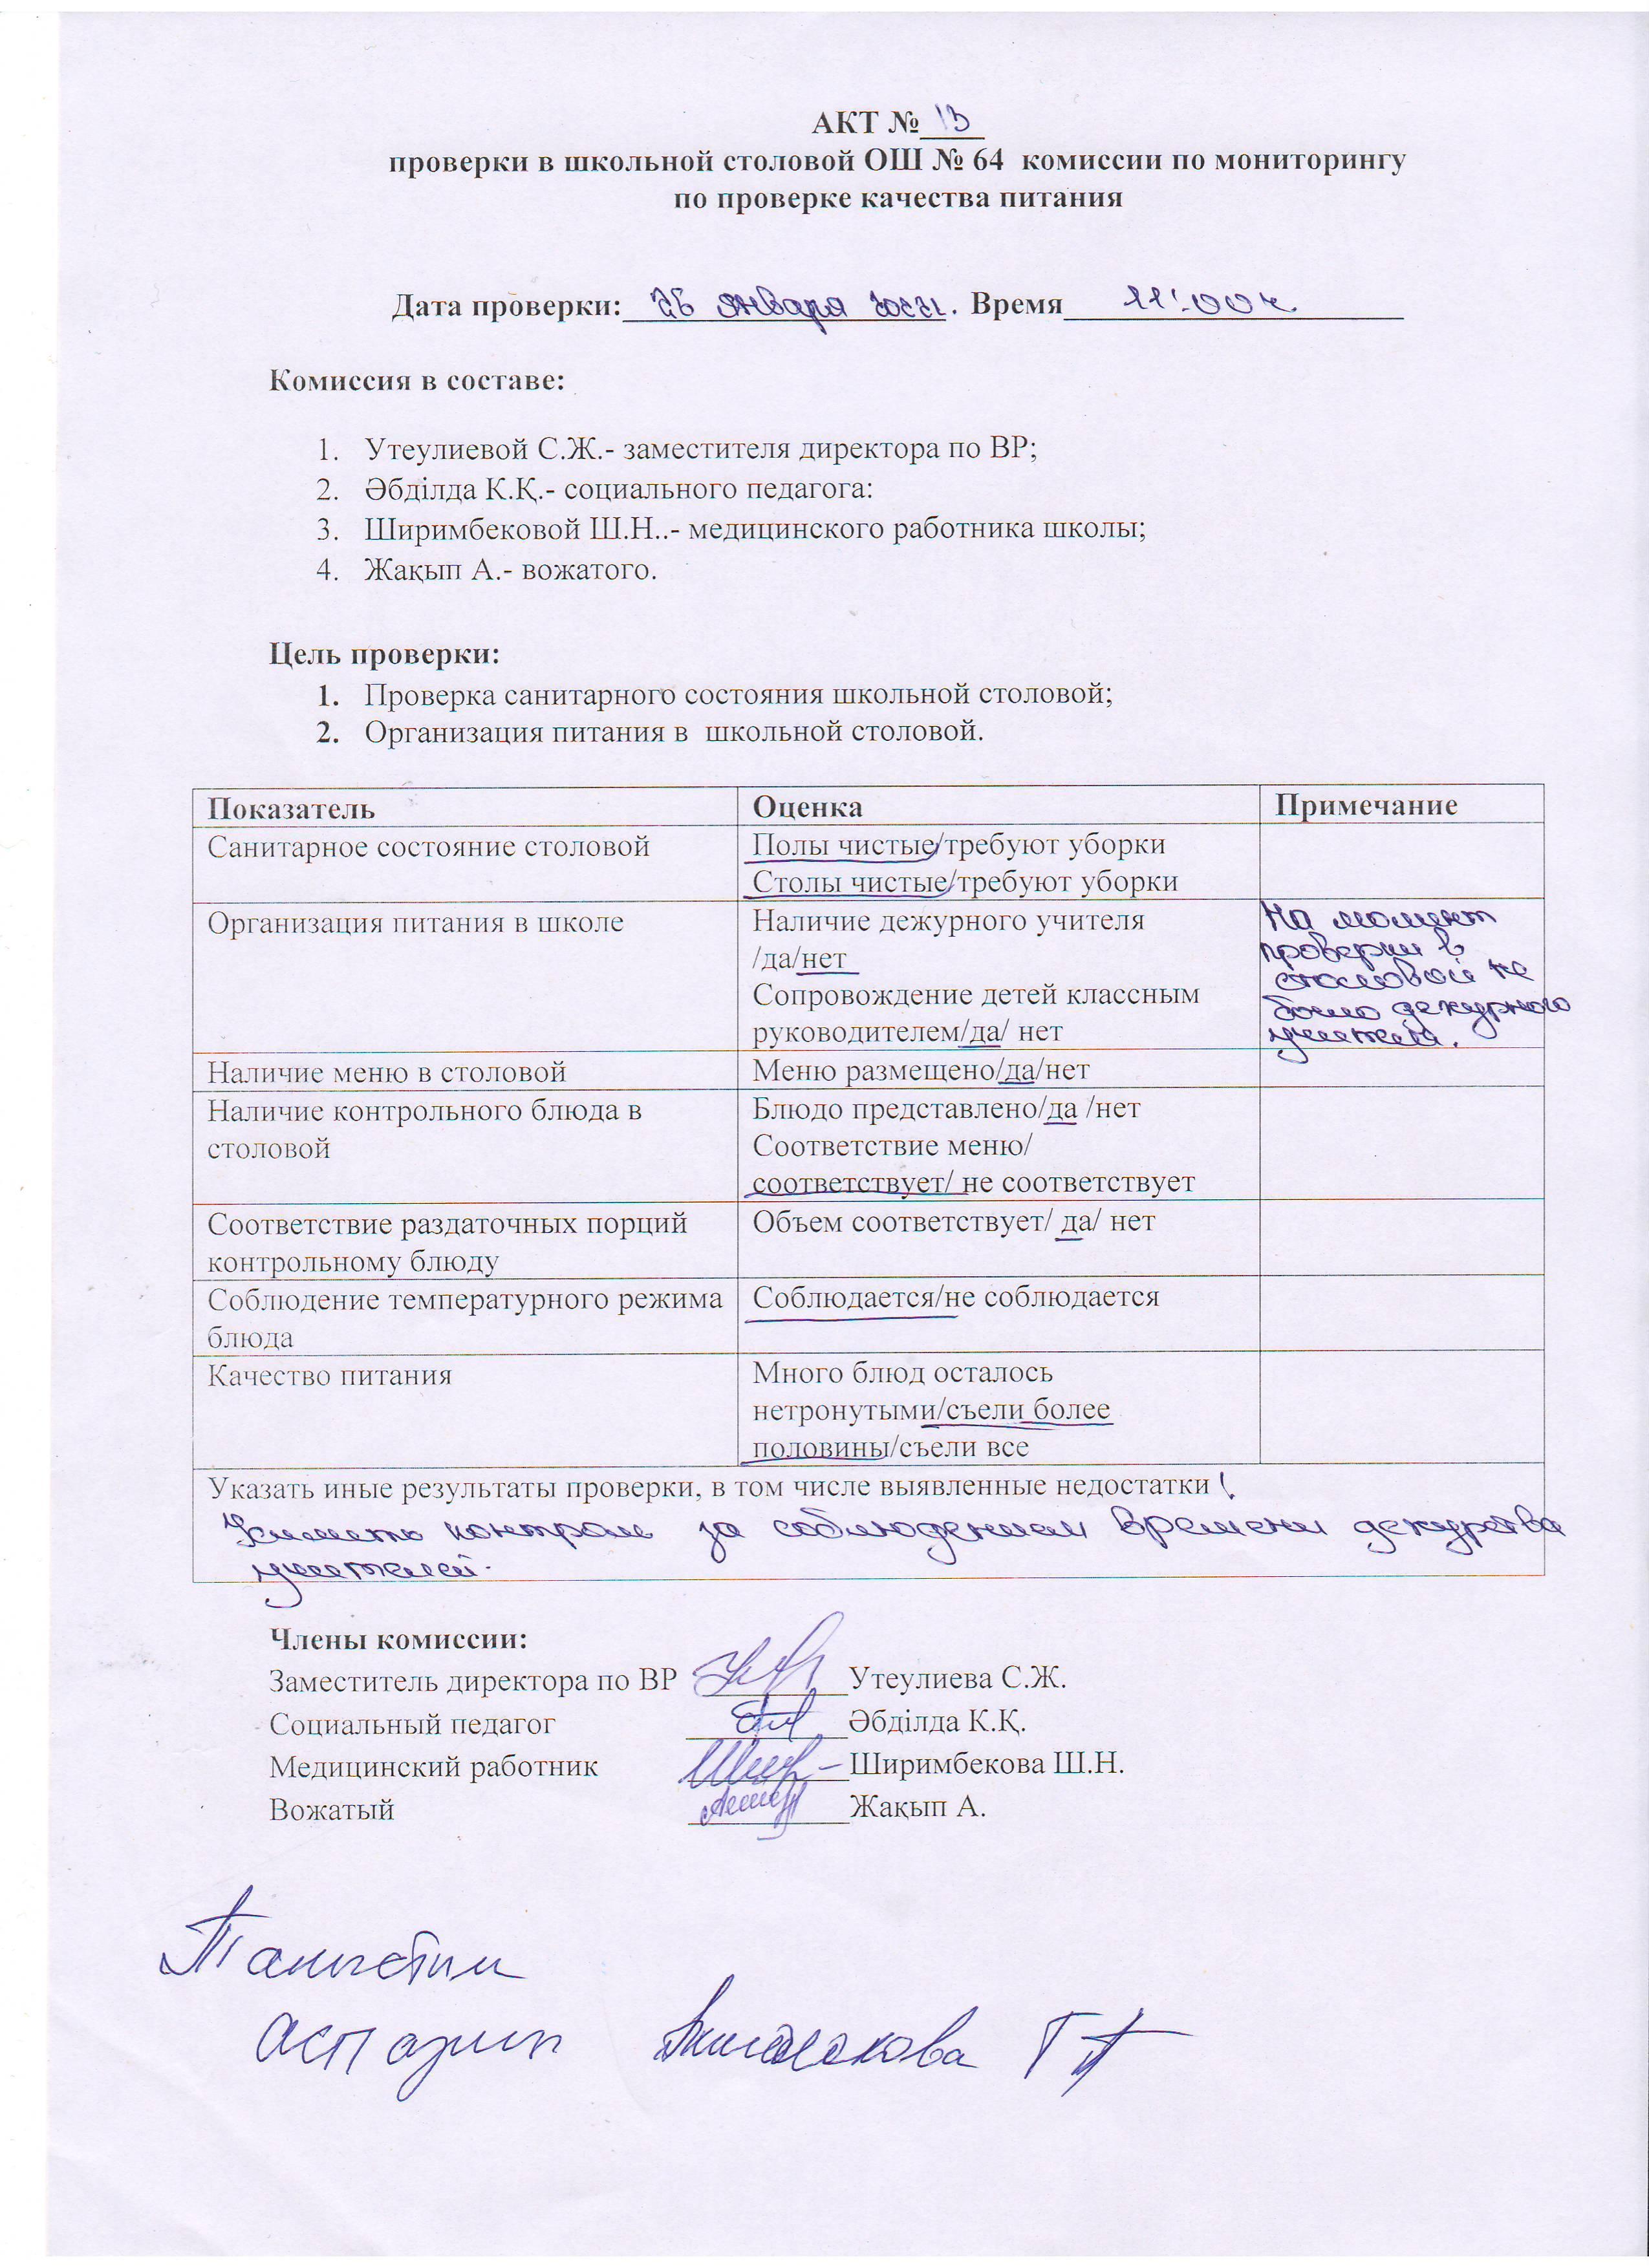 АКТ №13 проверки школьной столовой комиссии по мониторингу (бракеражной)